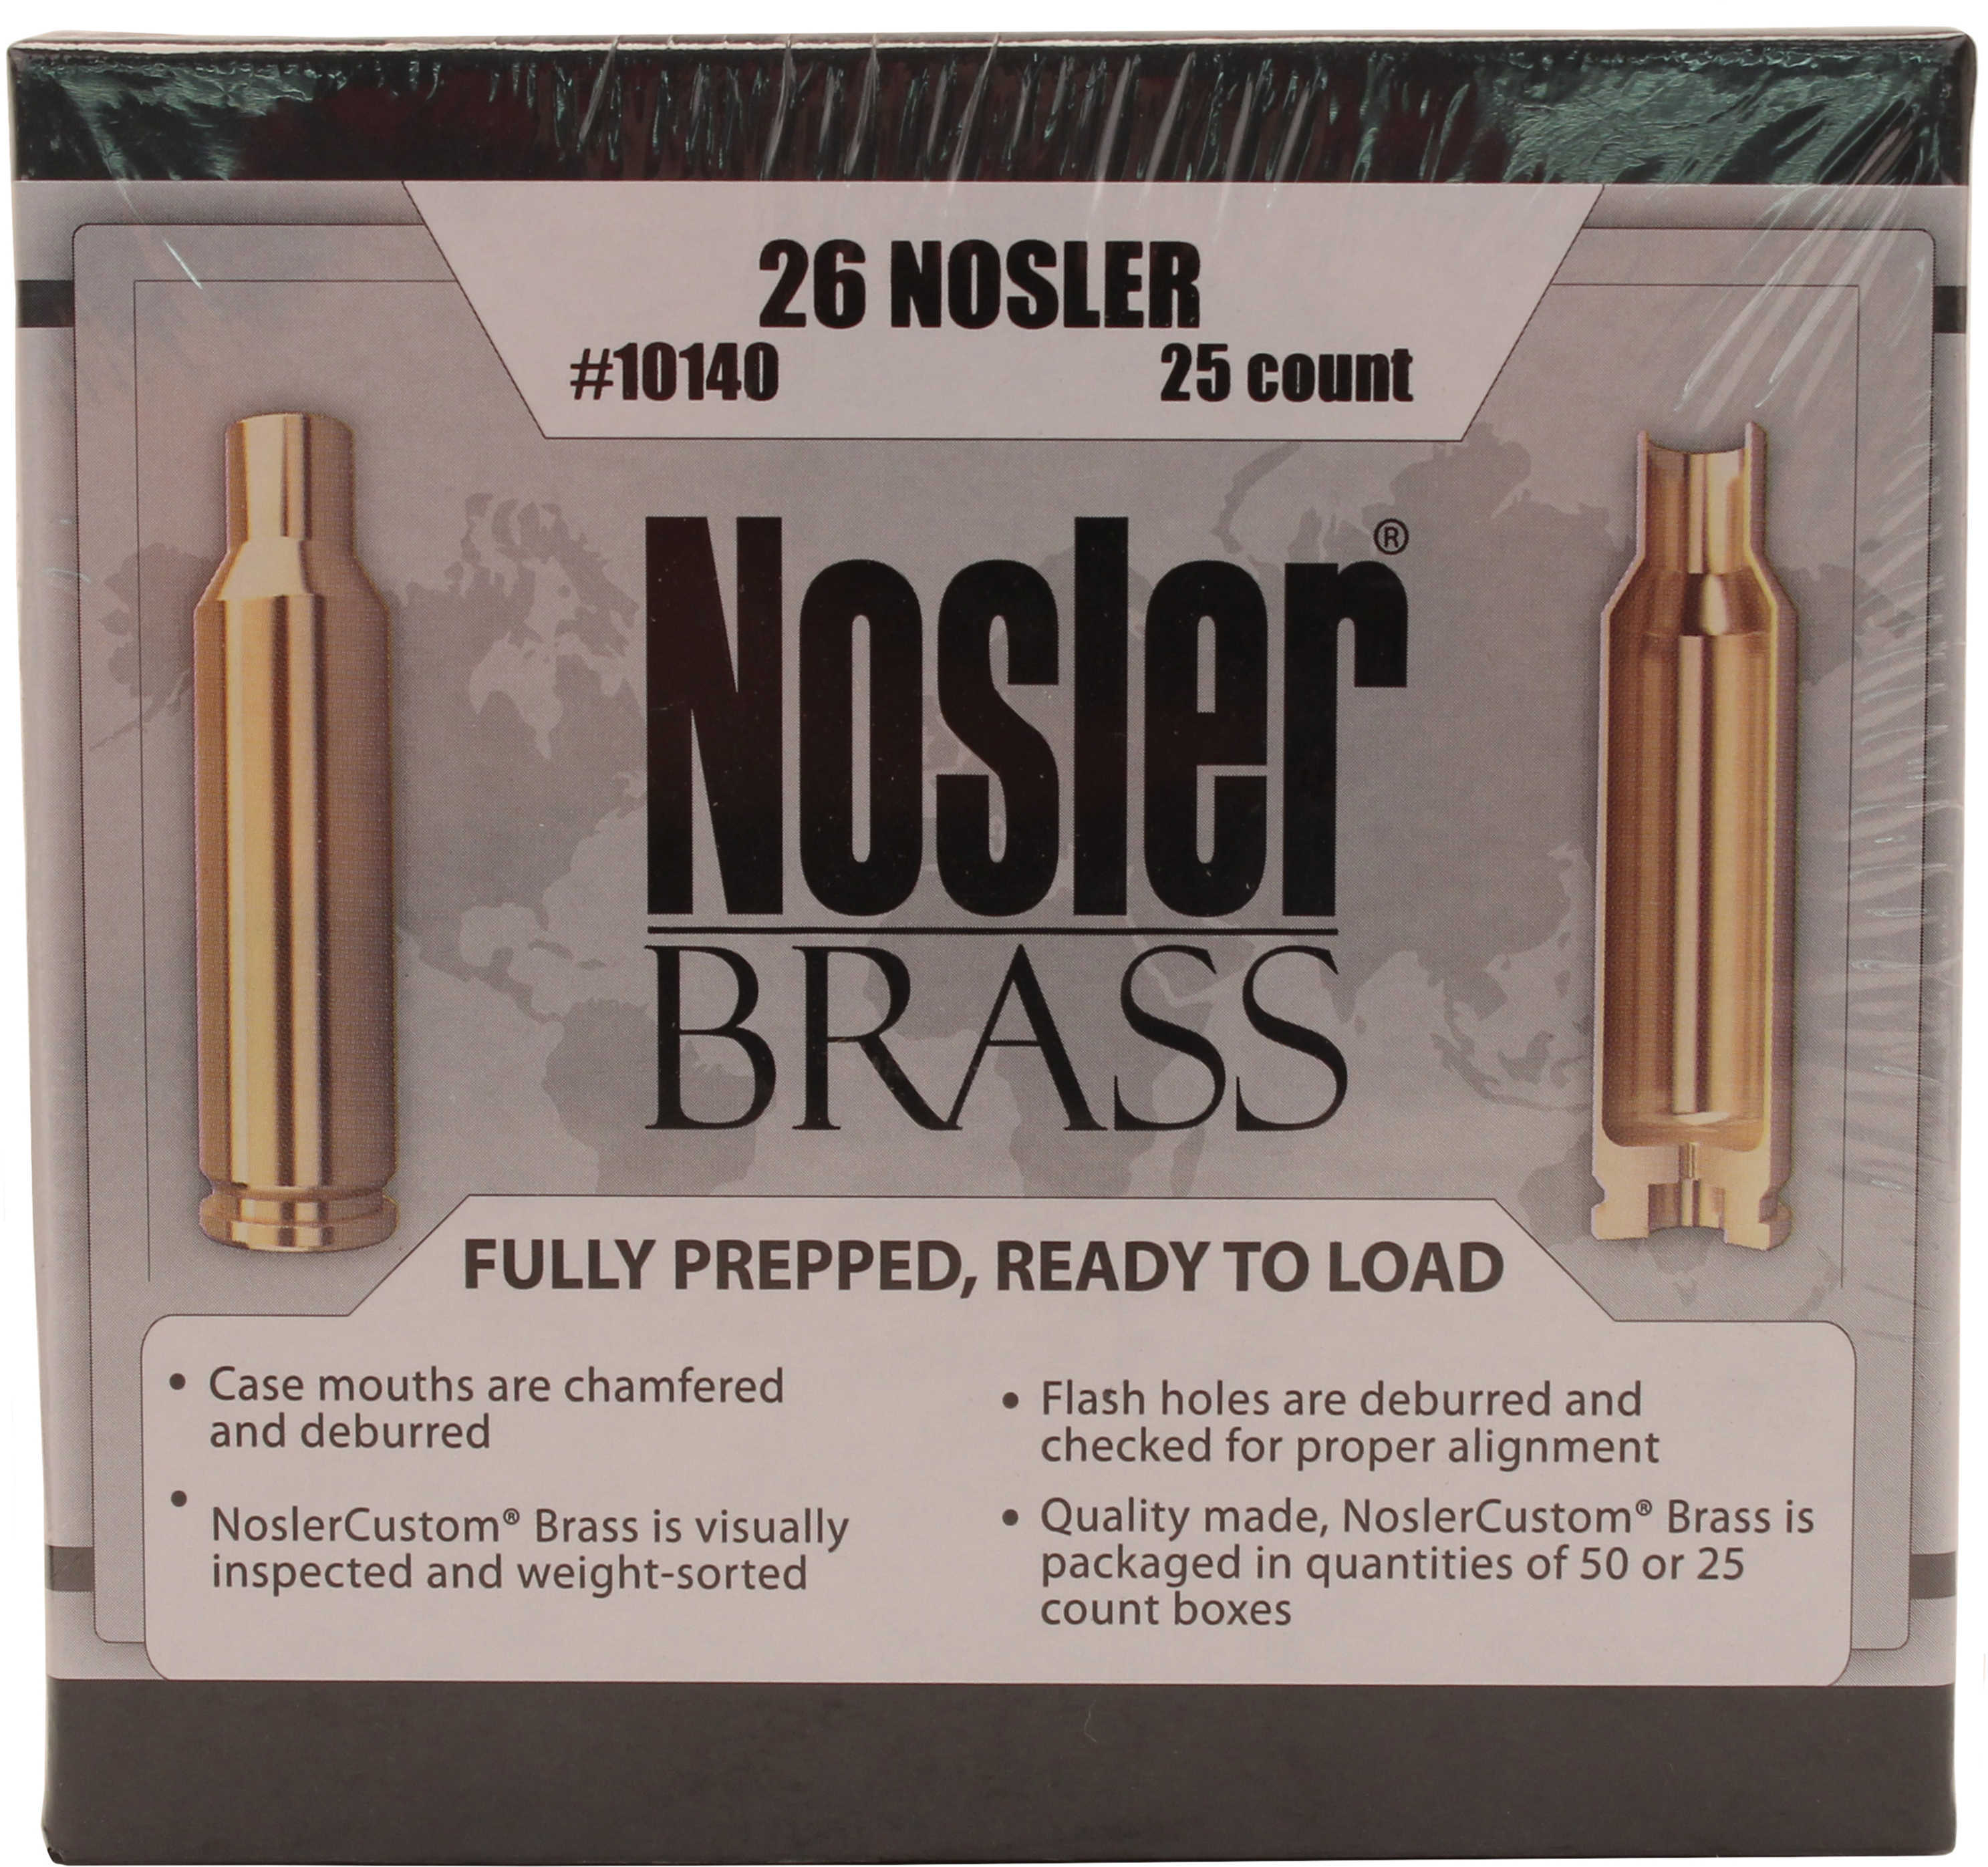 Nosler Brass 26 Nosler25/Bx